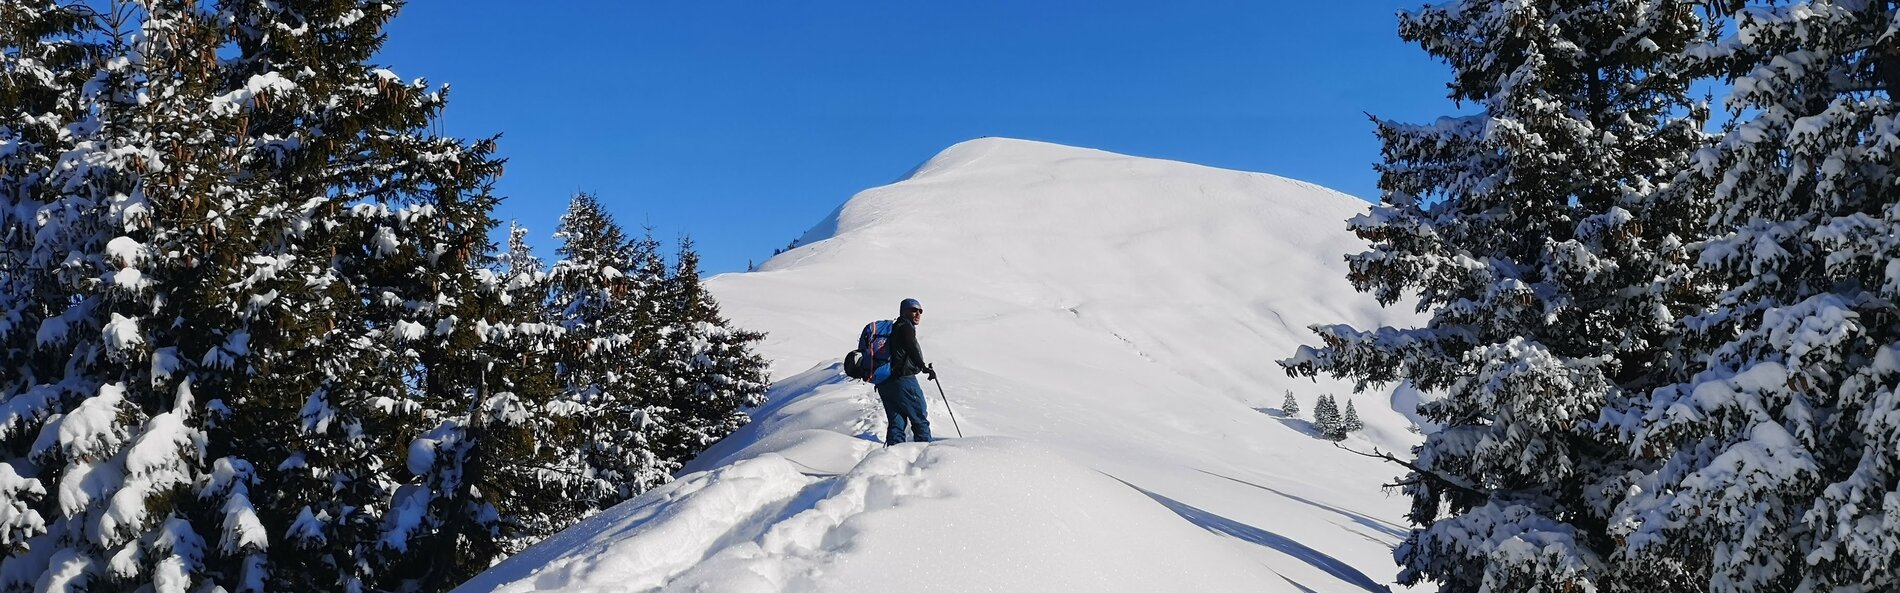 Skitourengeher steht auf einem Bergrücken in einer Waldlichtung, mit Blick auf den Gipfel